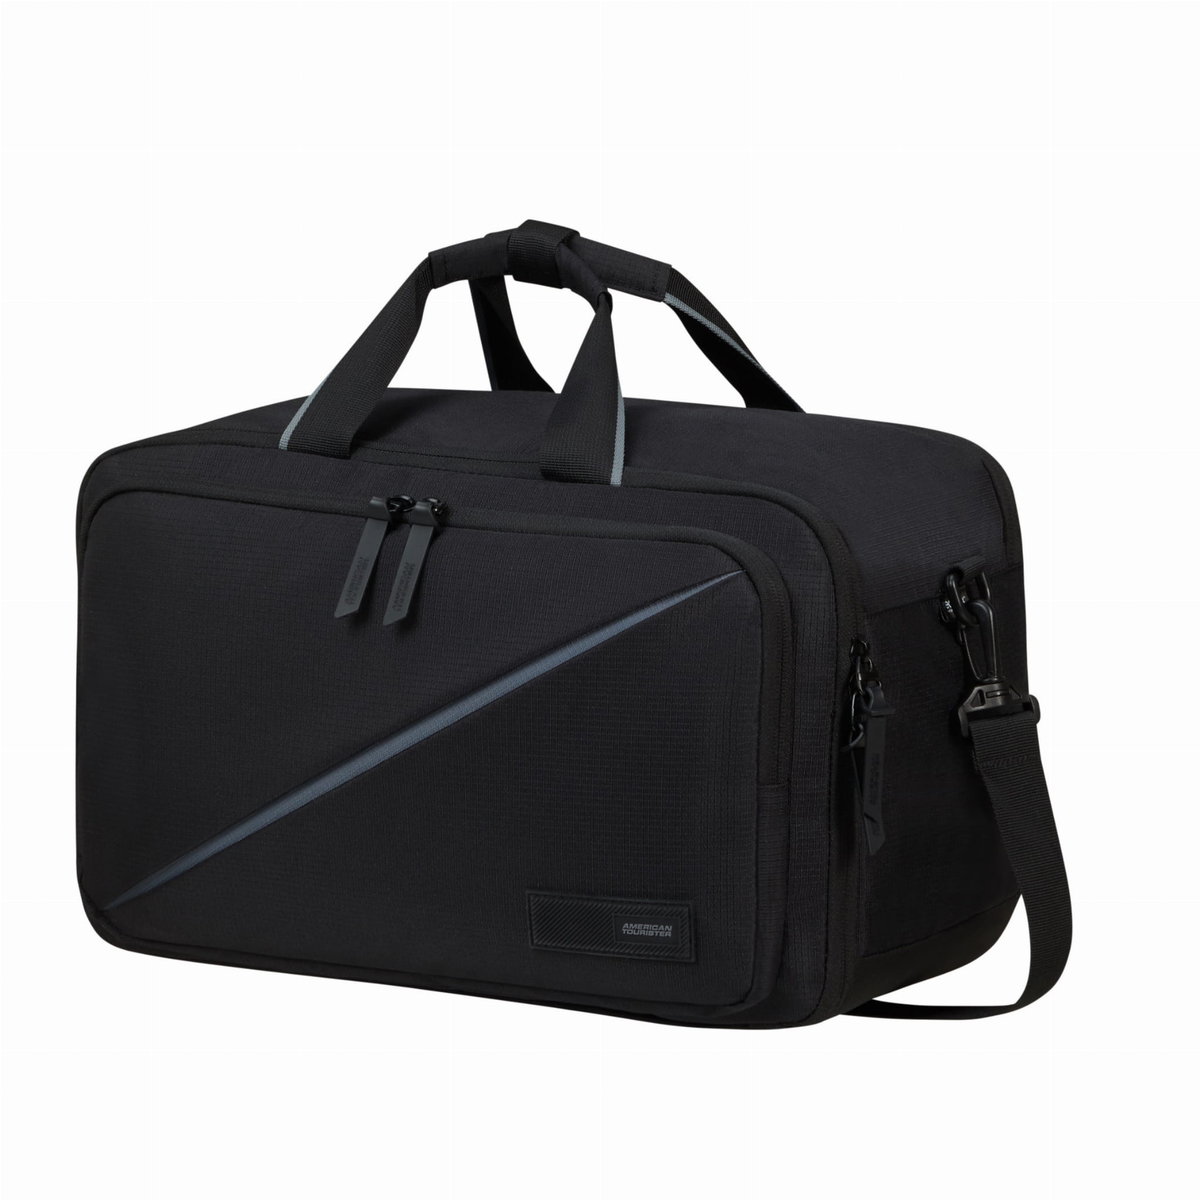 Zdjęcia - Plecak American Tourister  torba kabinowa z kieszenią na laptop  Take2cabin 